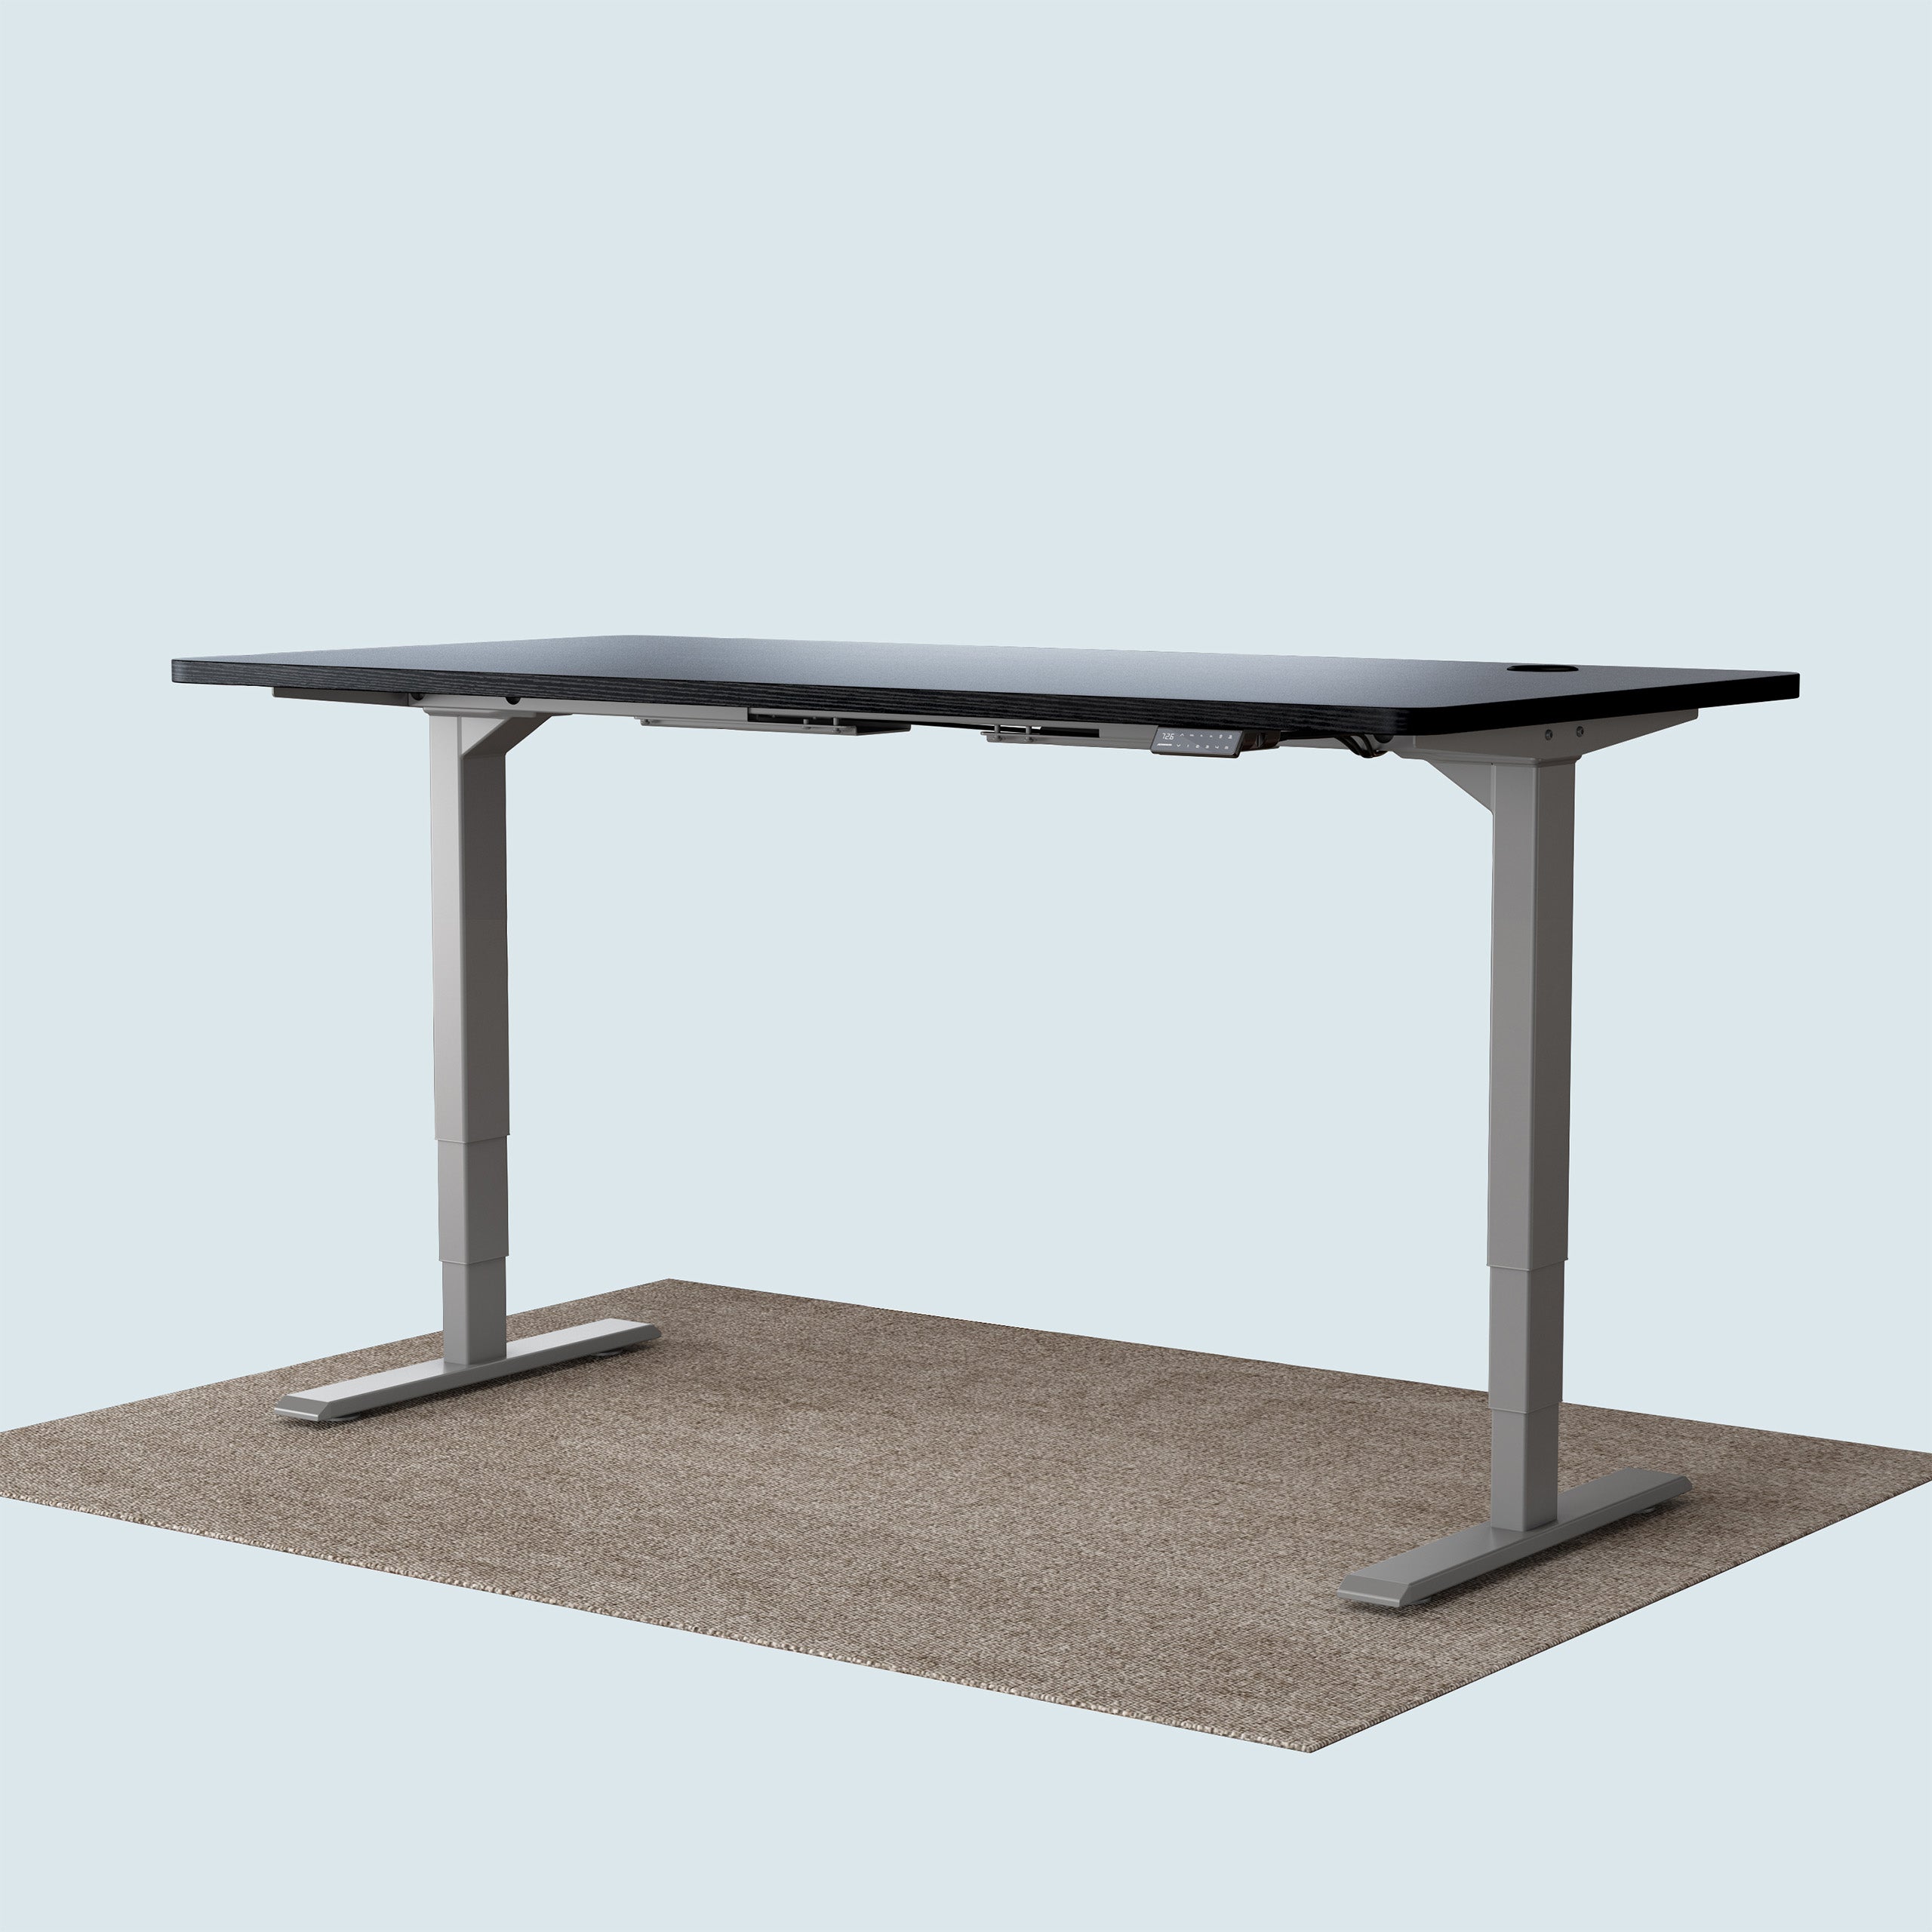 T2 Pro Plus height adjustable desk grey frame and 160x80cm black desktop